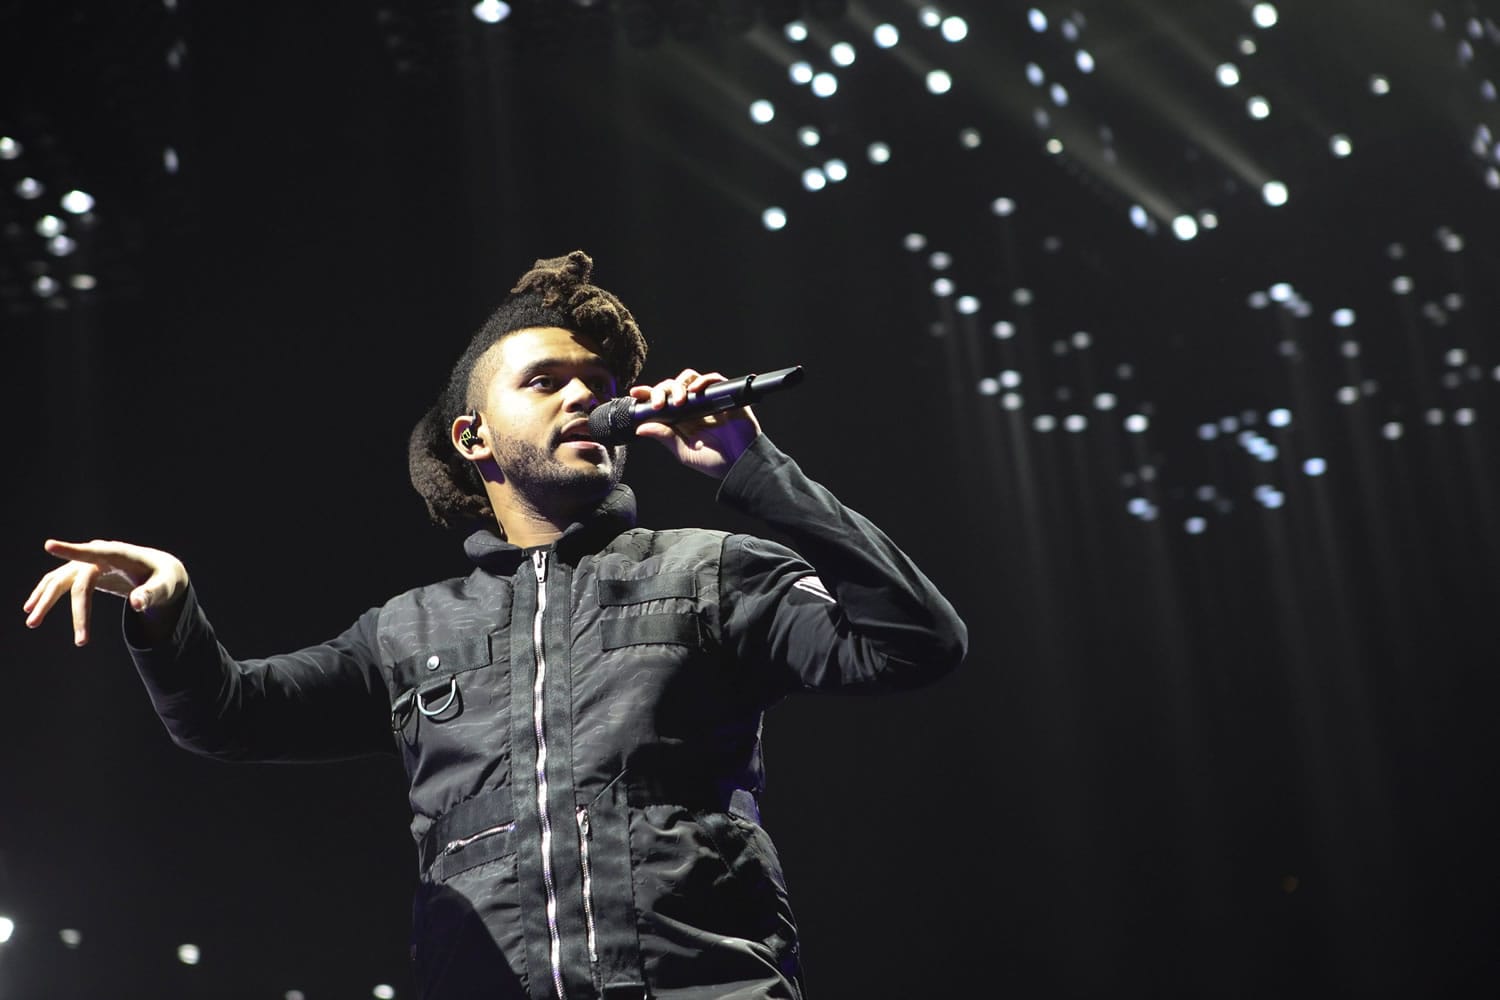 The Weeknd
Singer born Abel Tesfaye